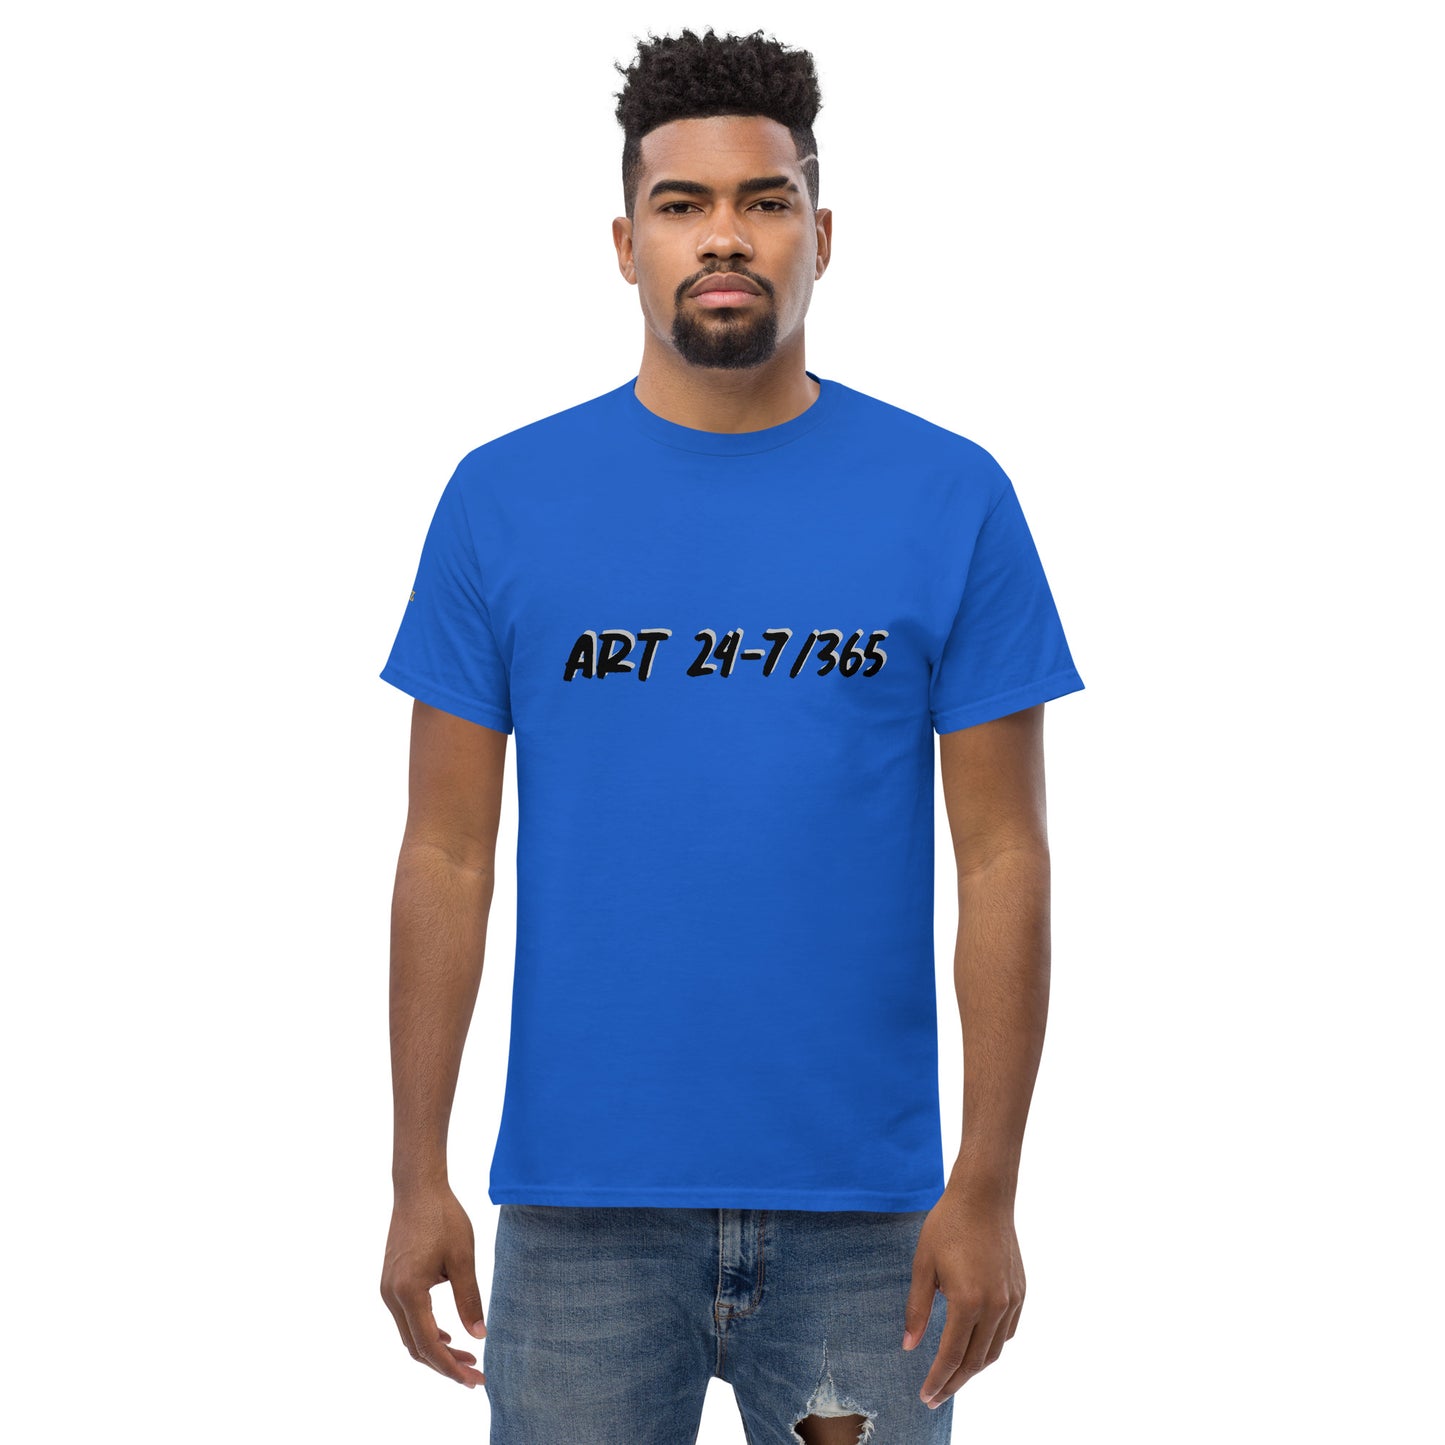 Art 24-7/365 Men's T-Shirt